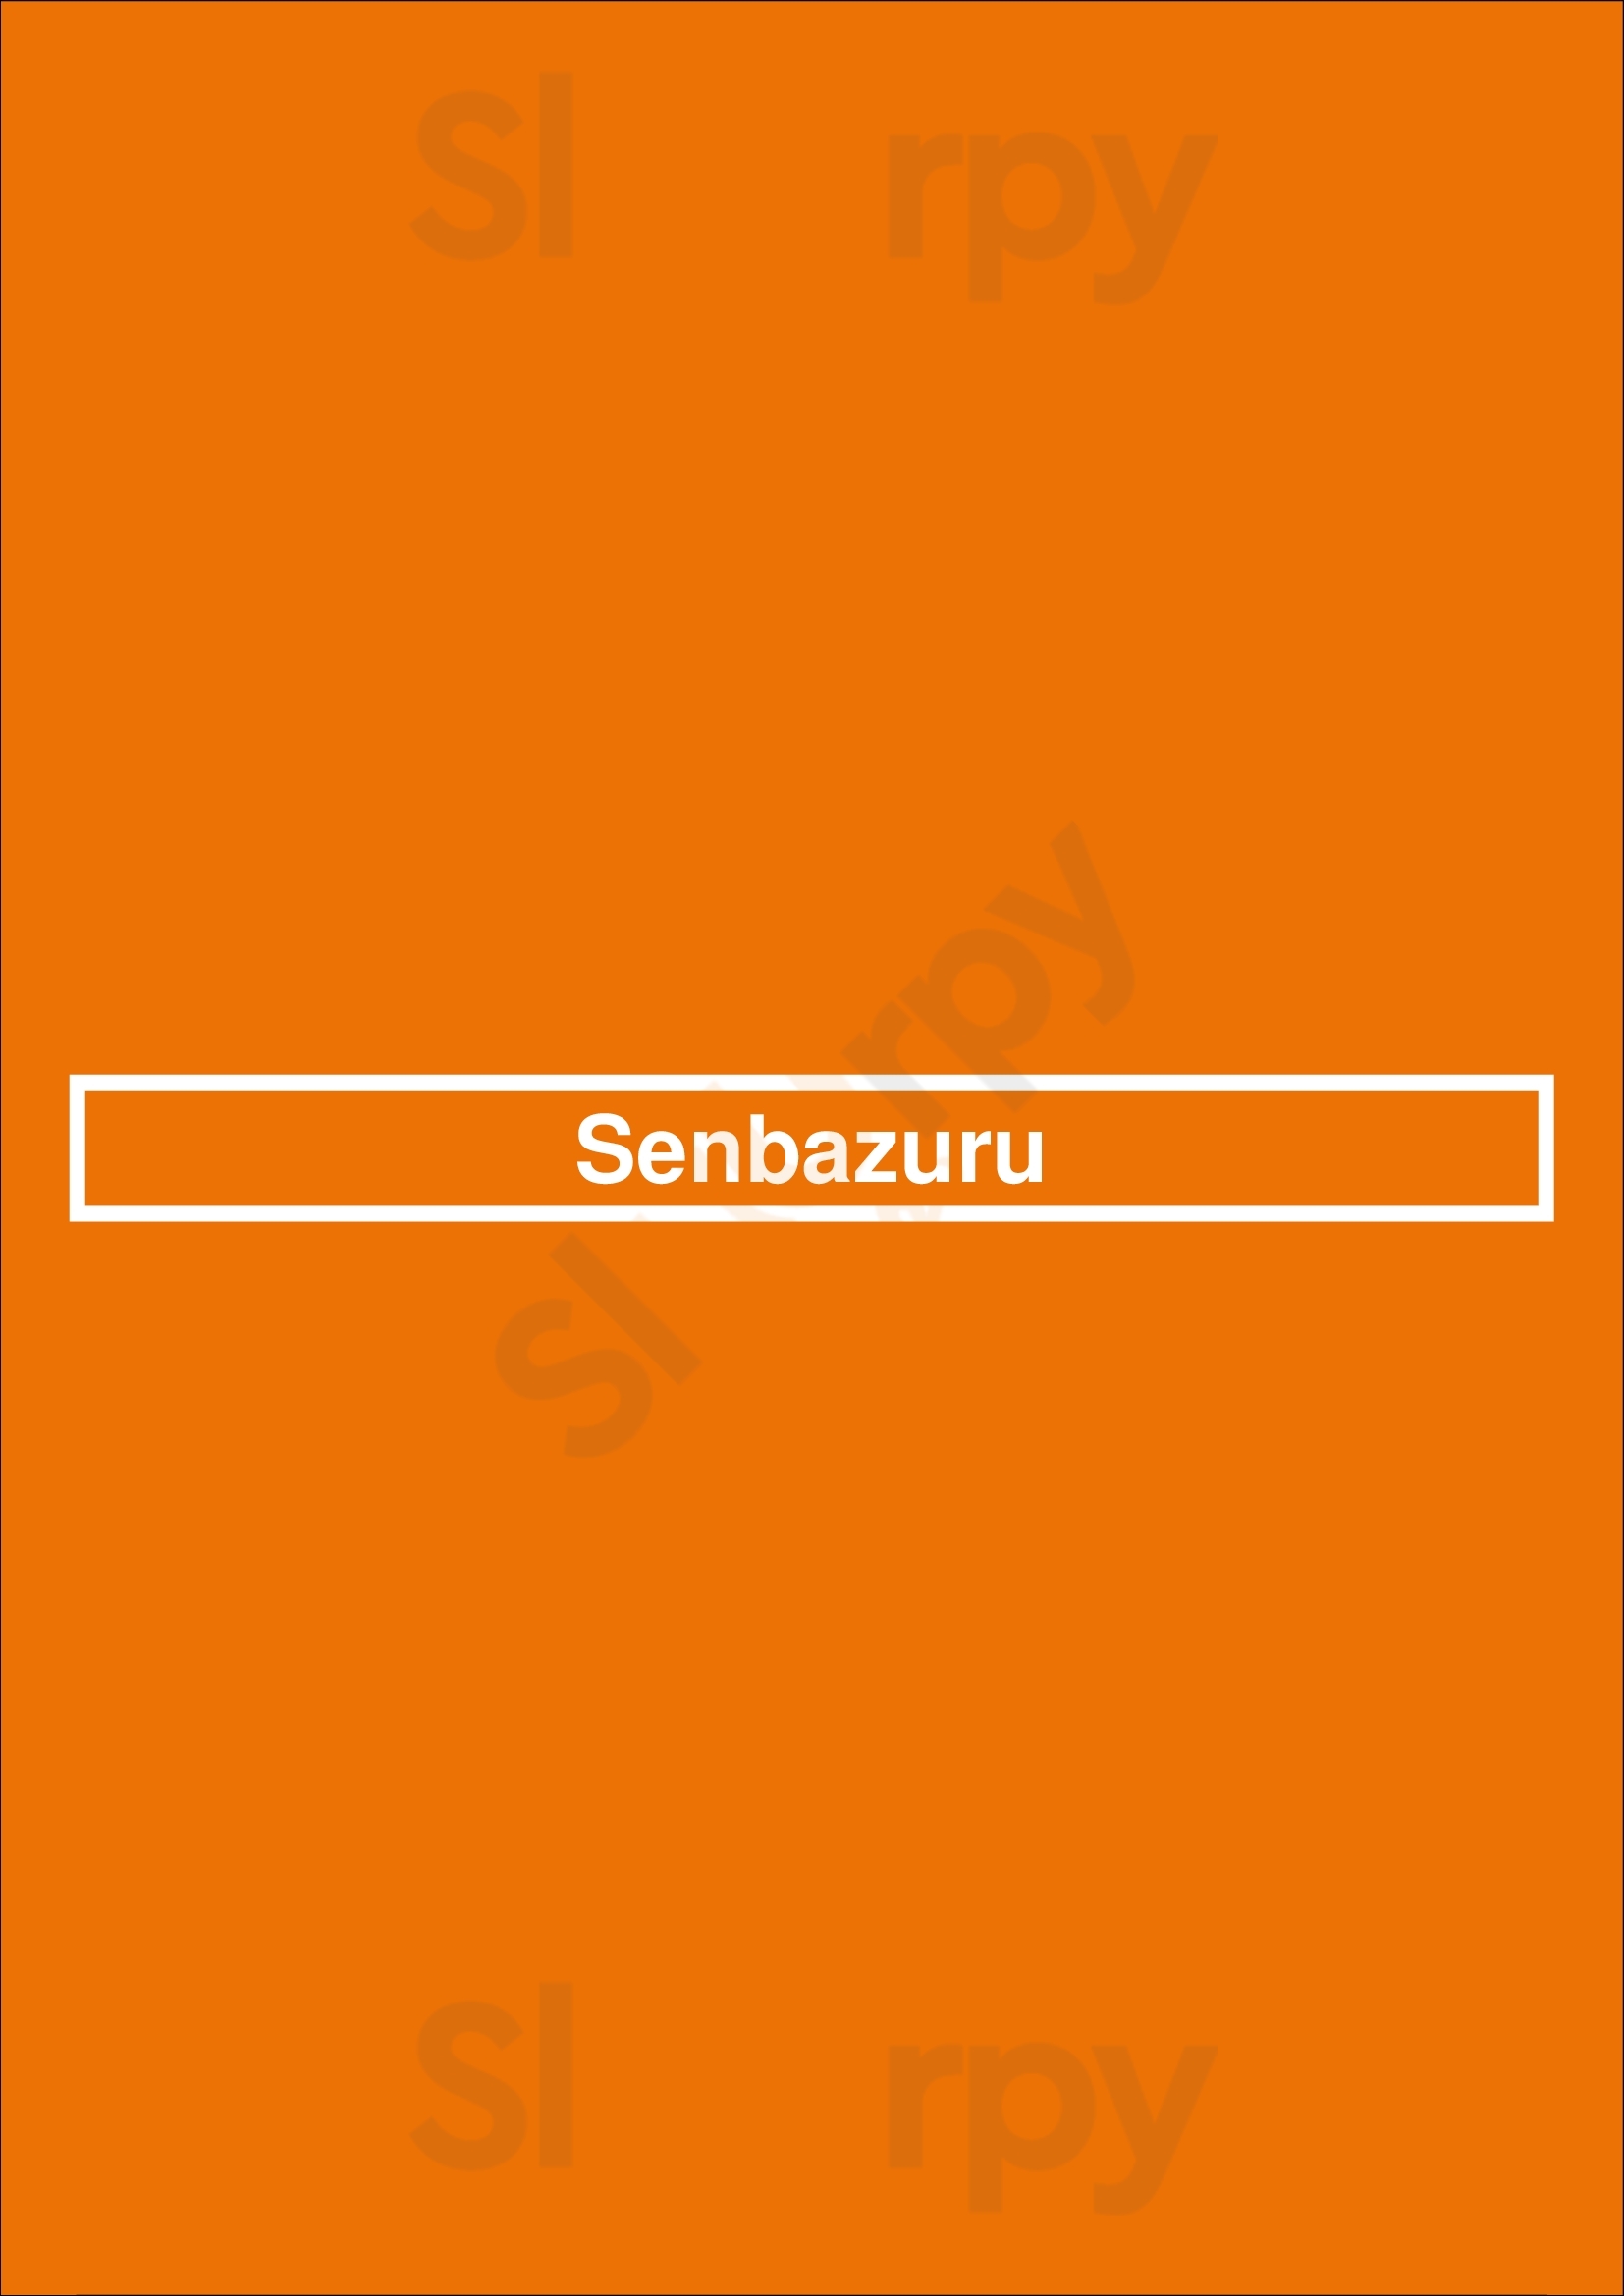 Senbazuru Hoofddorp Menu - 1